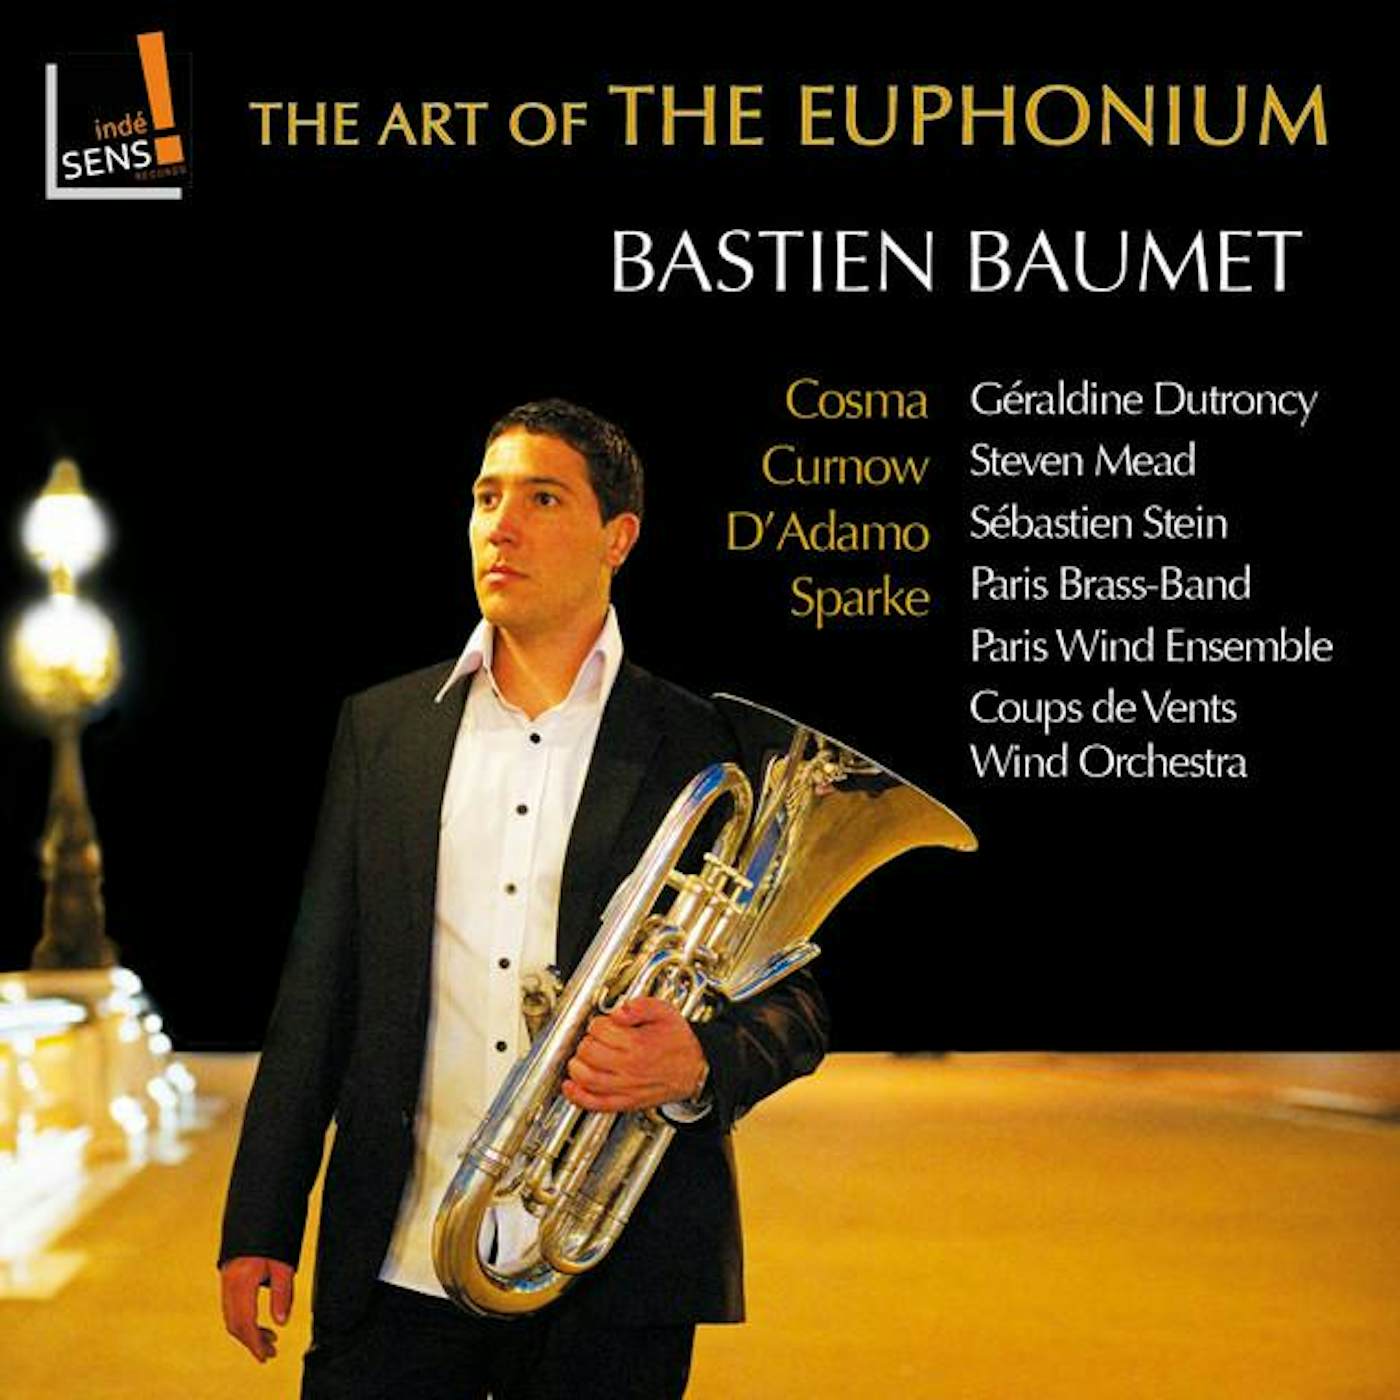 Bastien Baumet